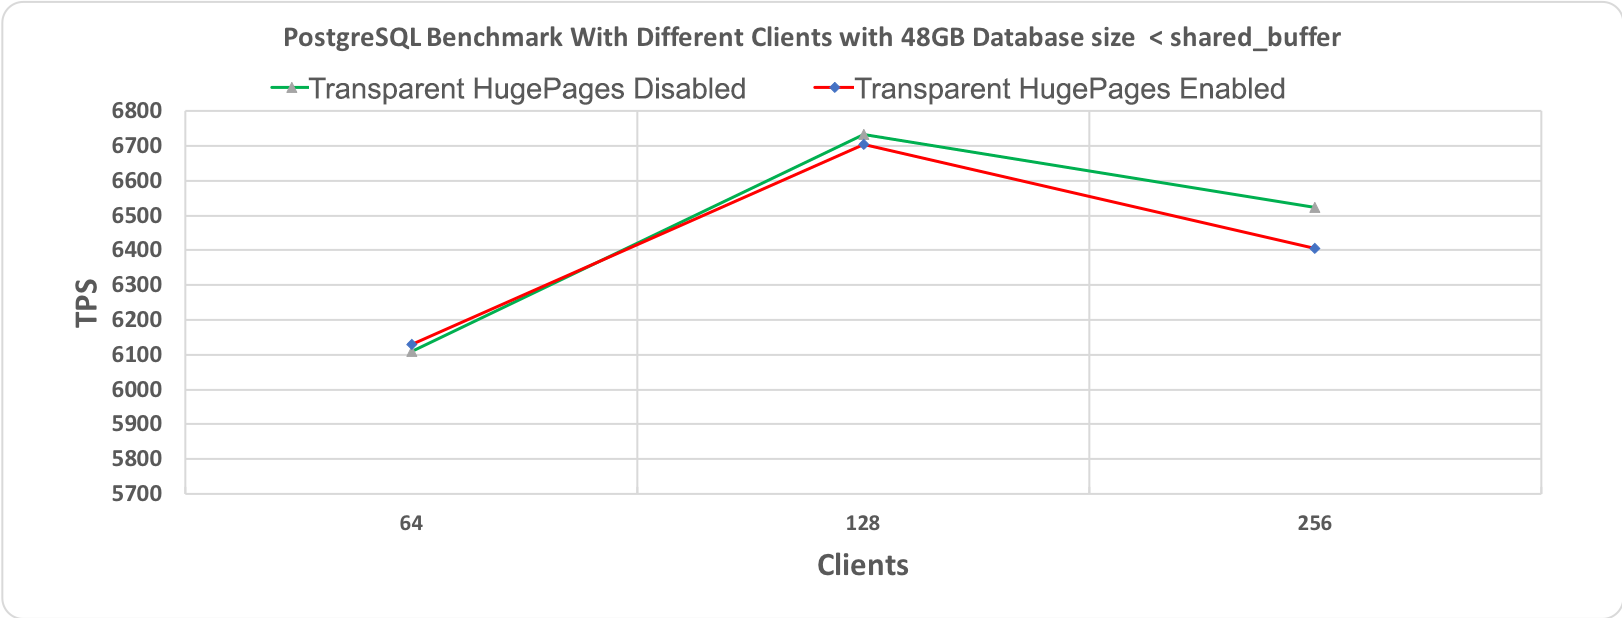 Рис. 3.1 Тест производительности PostgreSQL, длительность 10 минут при размере базы данных (48 гигабайт) < shared_buffer (64 гигабайт)